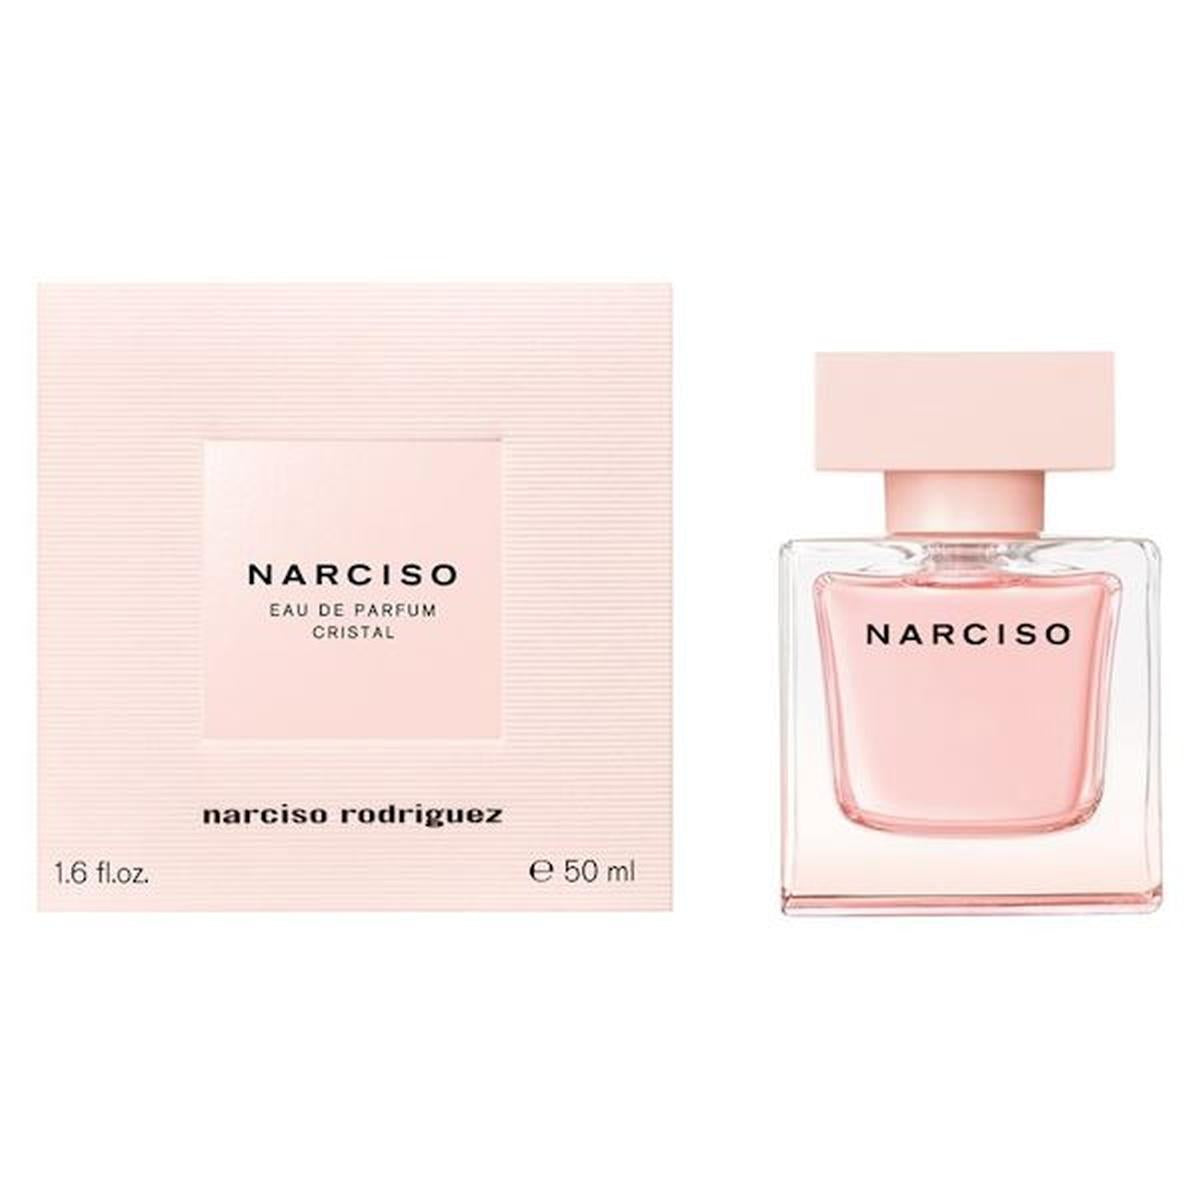 Narciso Cristal eau de parfum spray 50 ml Without blister 